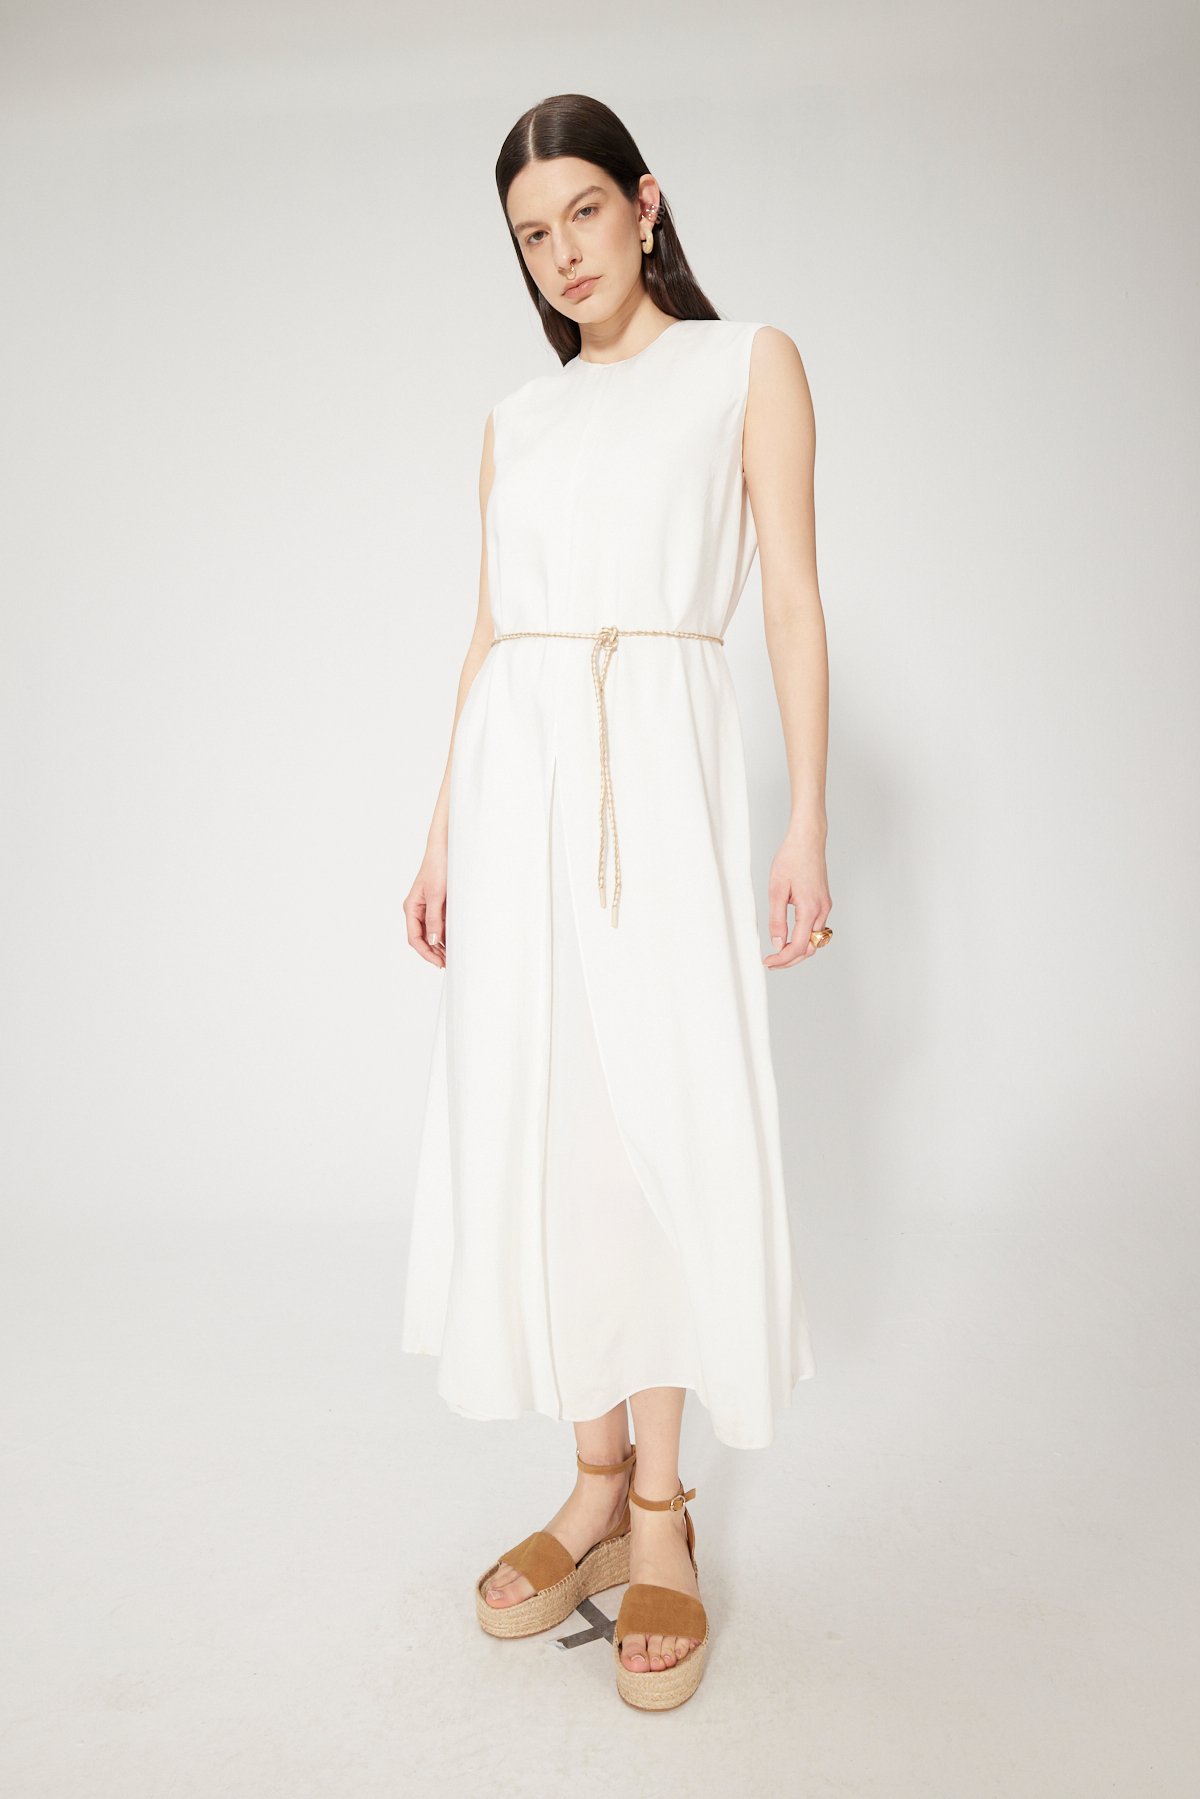 MODAL MAXI DRESS - WHITE